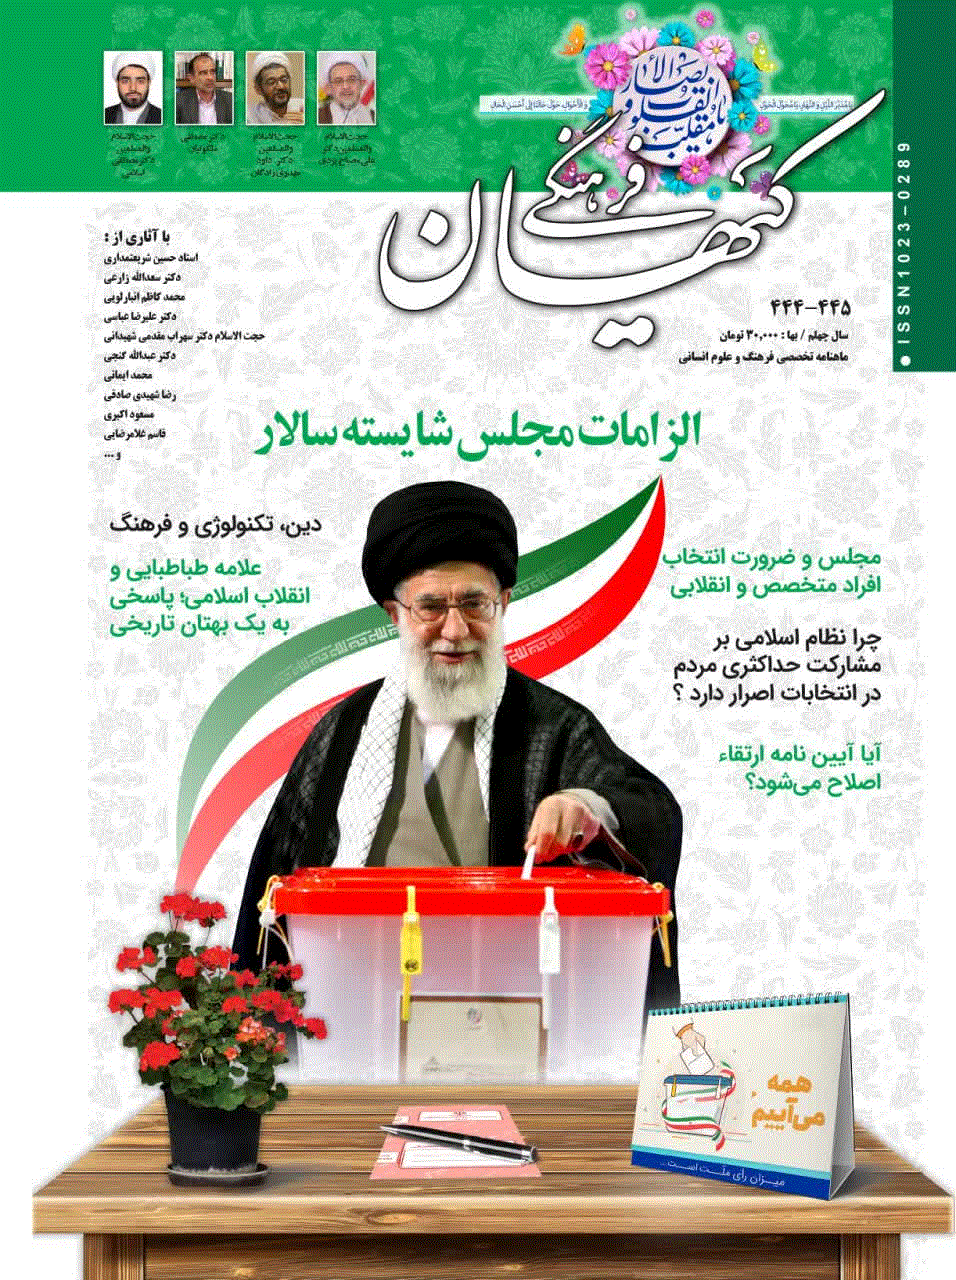 کیهان فرهنگی - خرداد 1365 - شماره 27